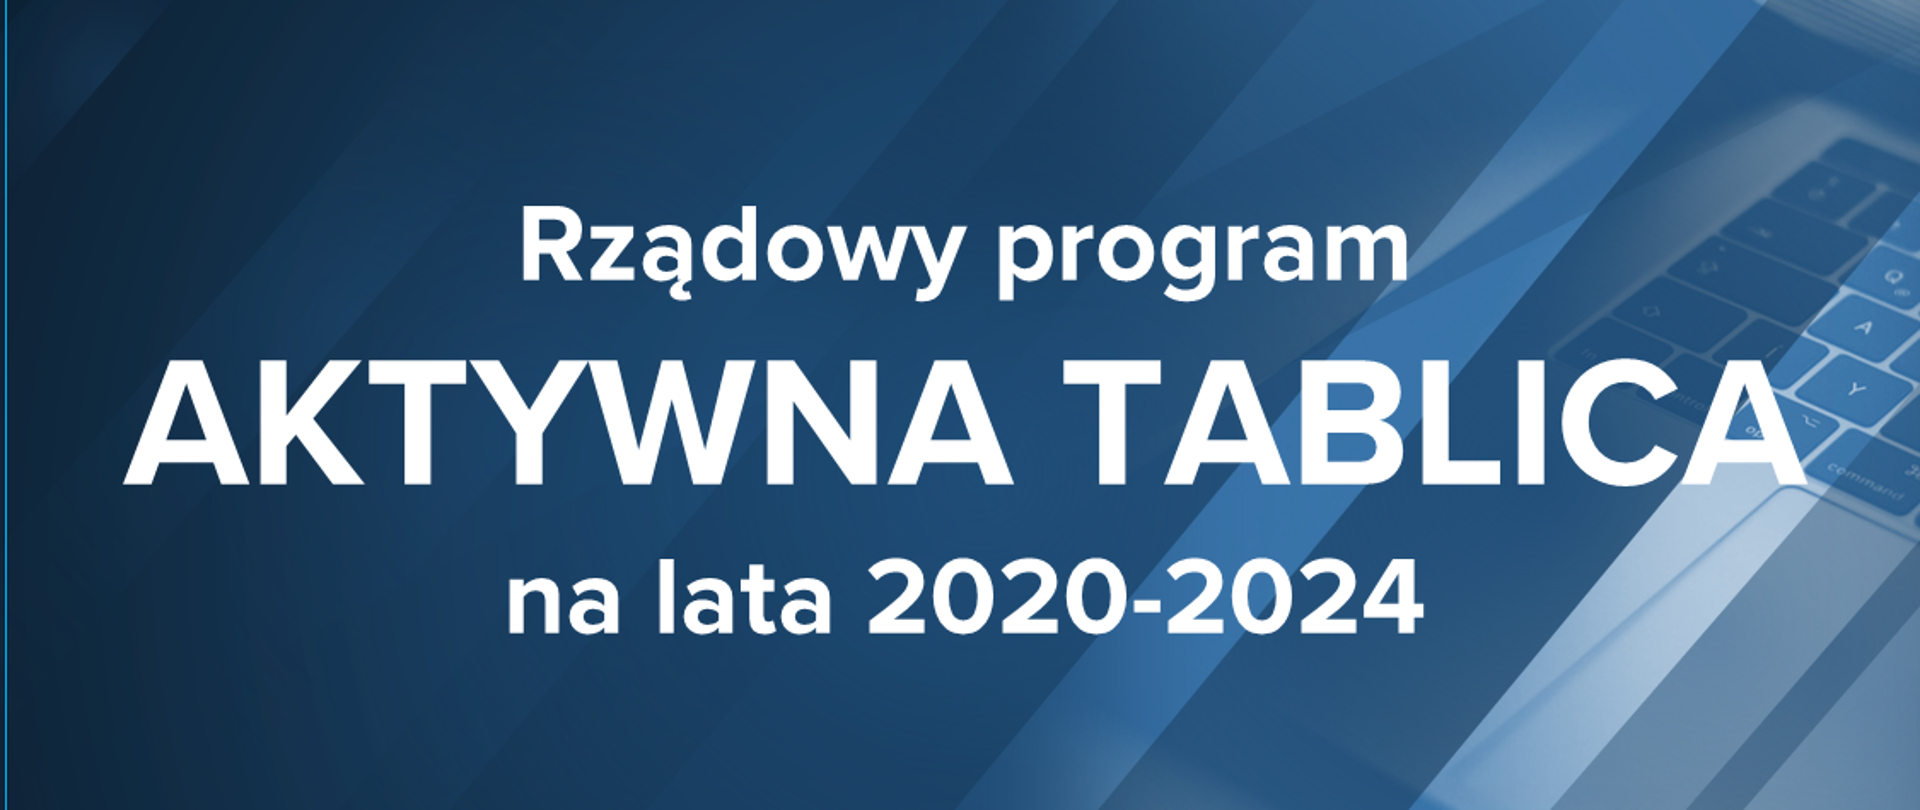 Ciemnoniebieska grafika z tekstem – Rządowy program "Aktywna tablica" na lata 2020-2024